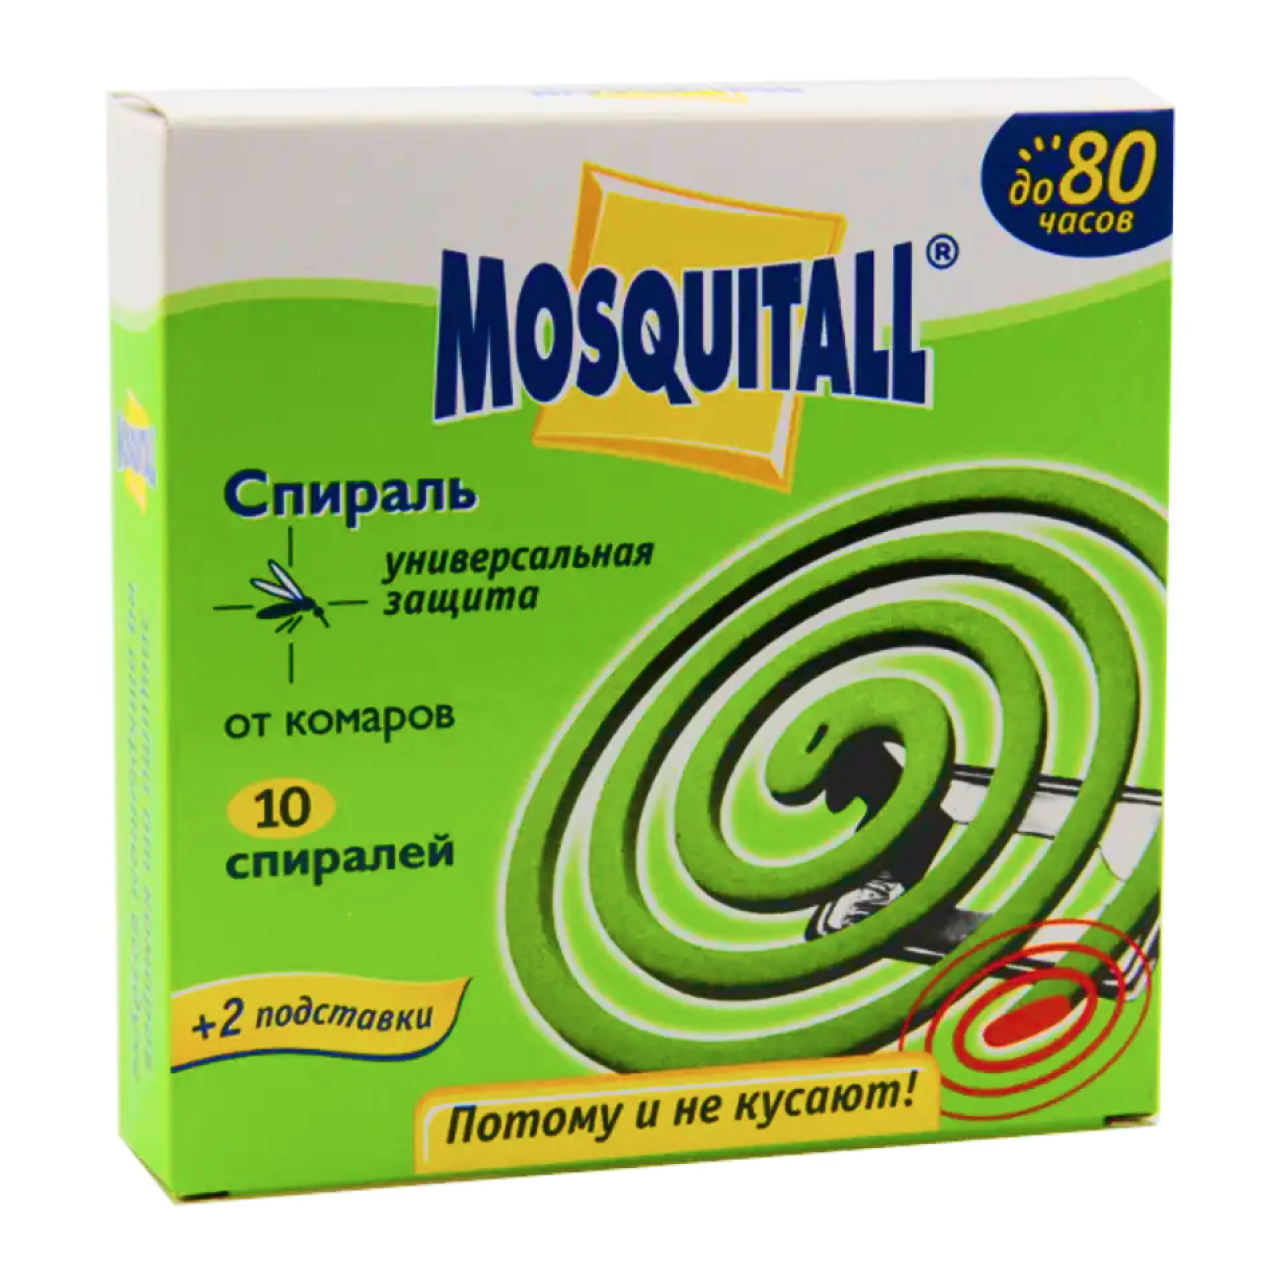 Спирали от комаров Универсальная защита Mosquitall 10 шт. (00198)